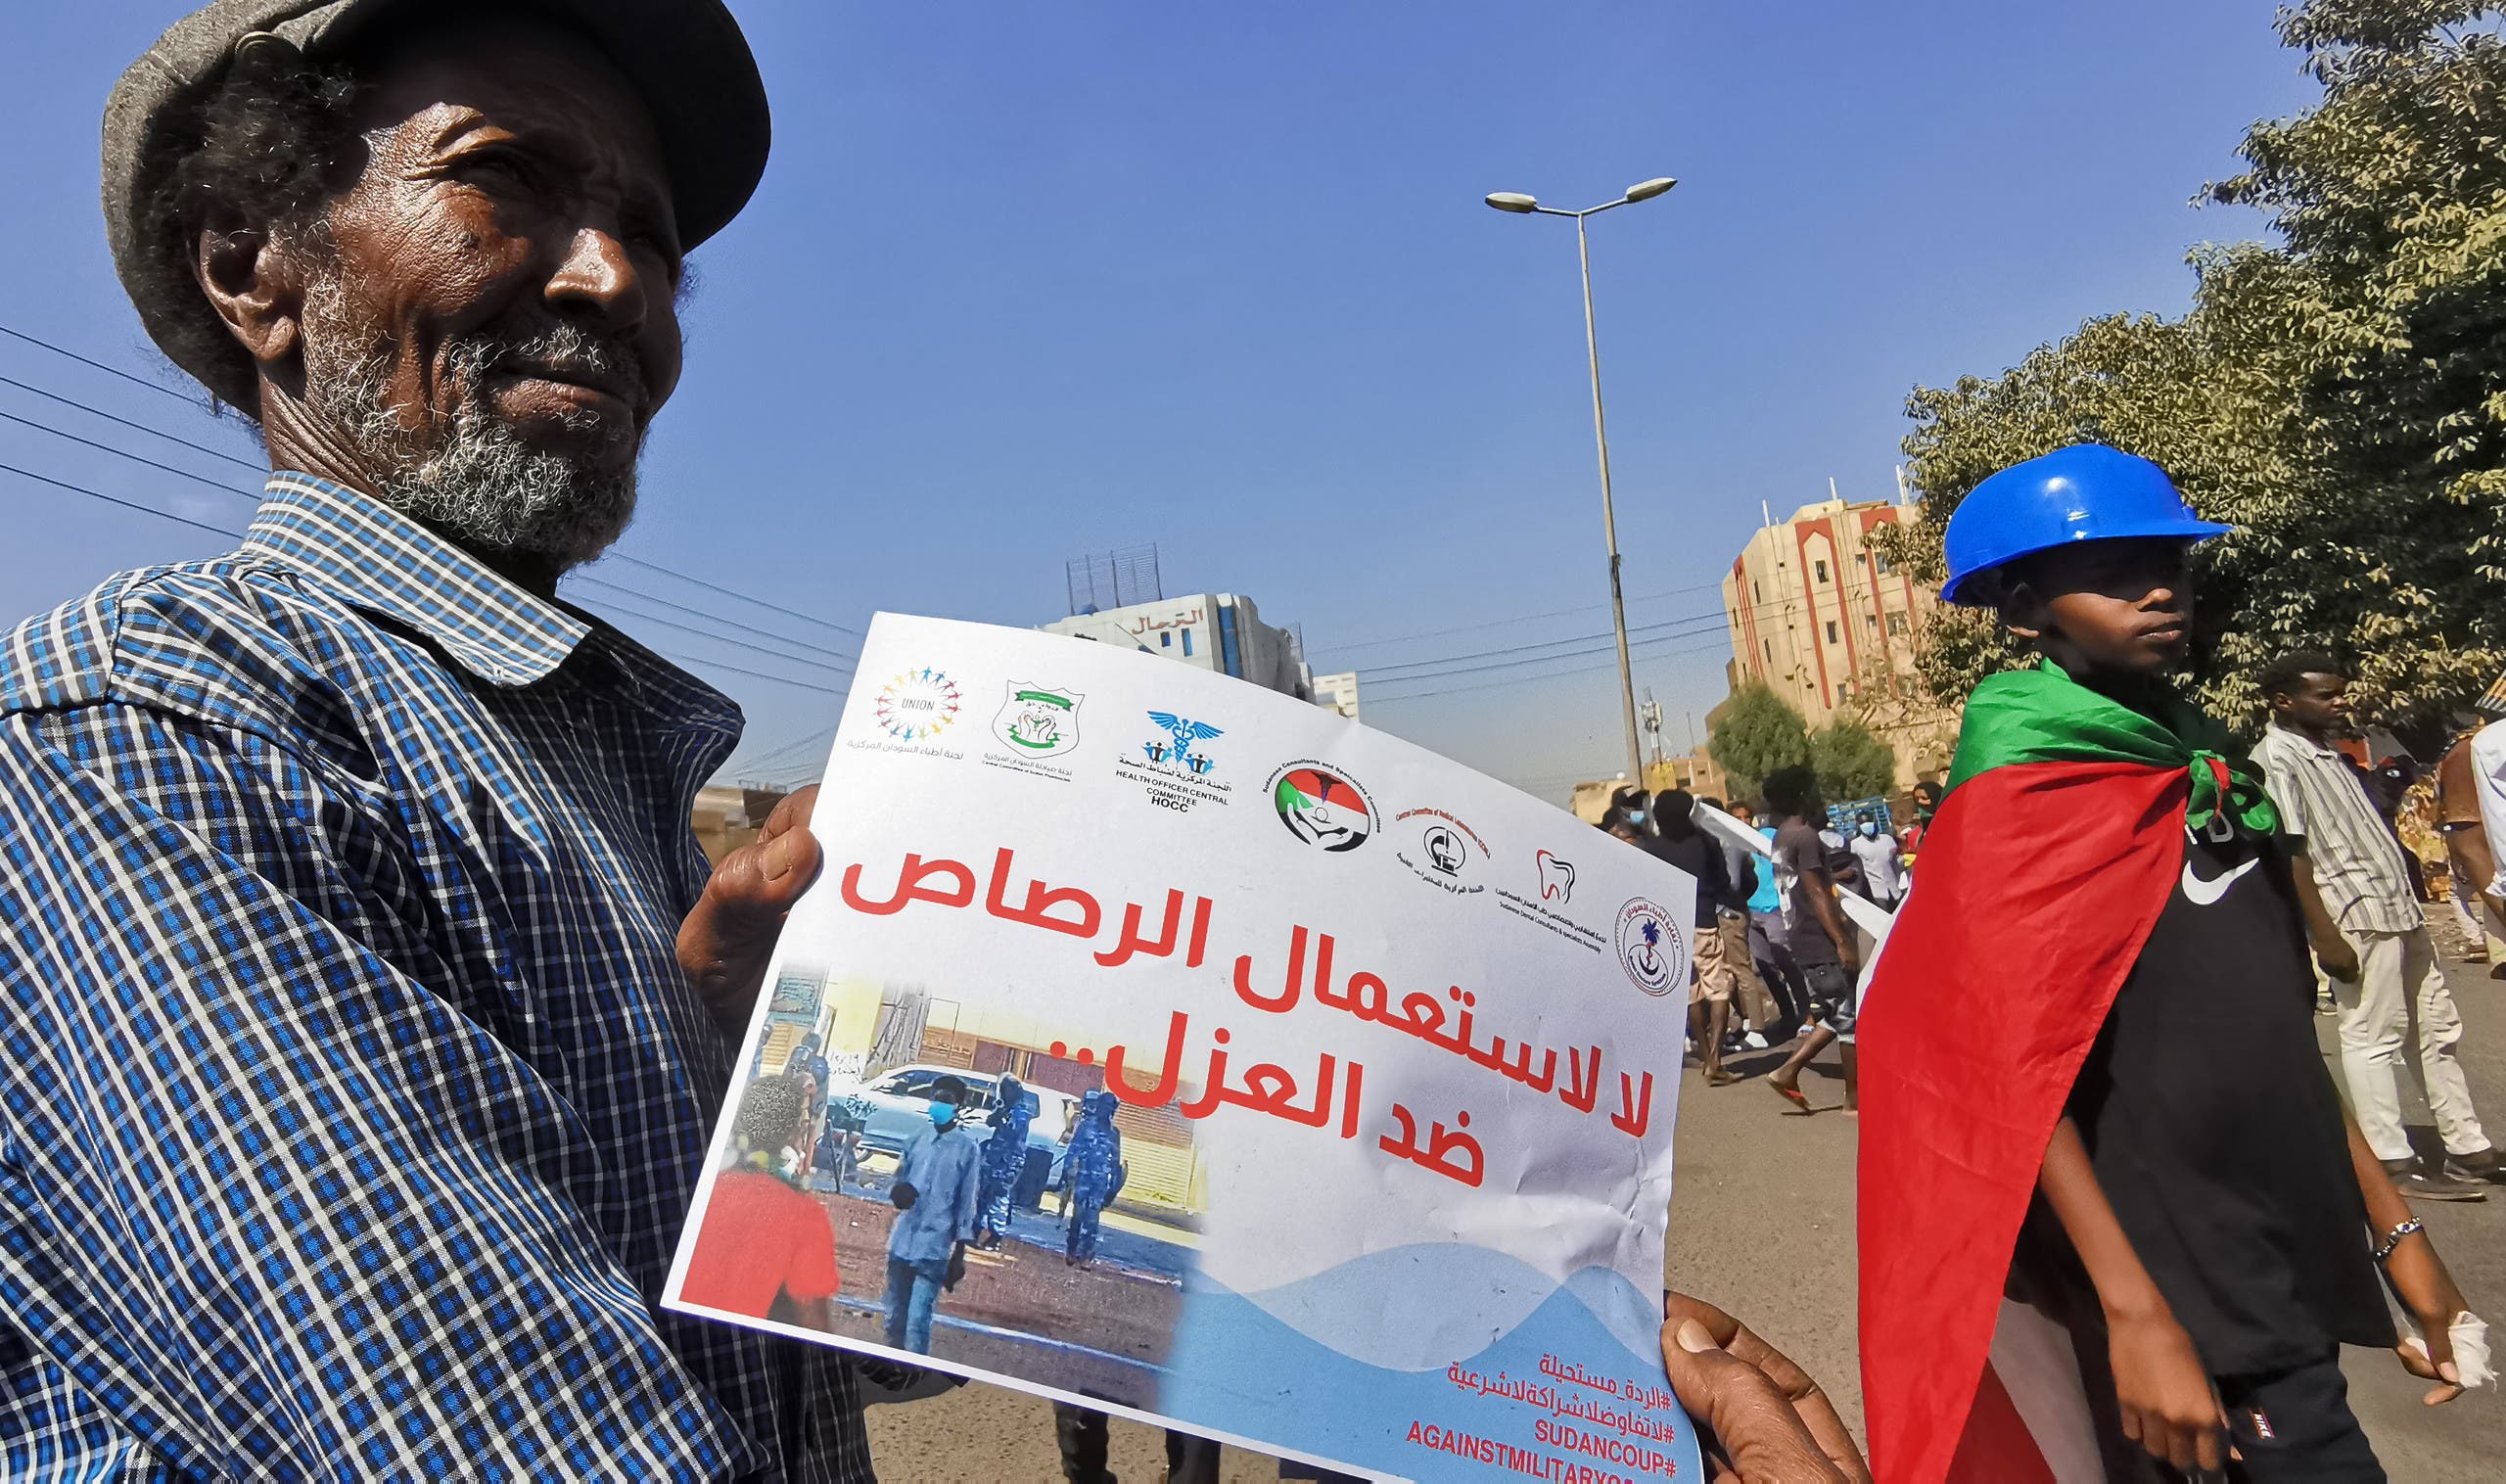 متظاهر يرفع لافتة ضد إطلاق الرصاص على المحتجين خلال مظاهرة في الخرطوم أمس الأحد